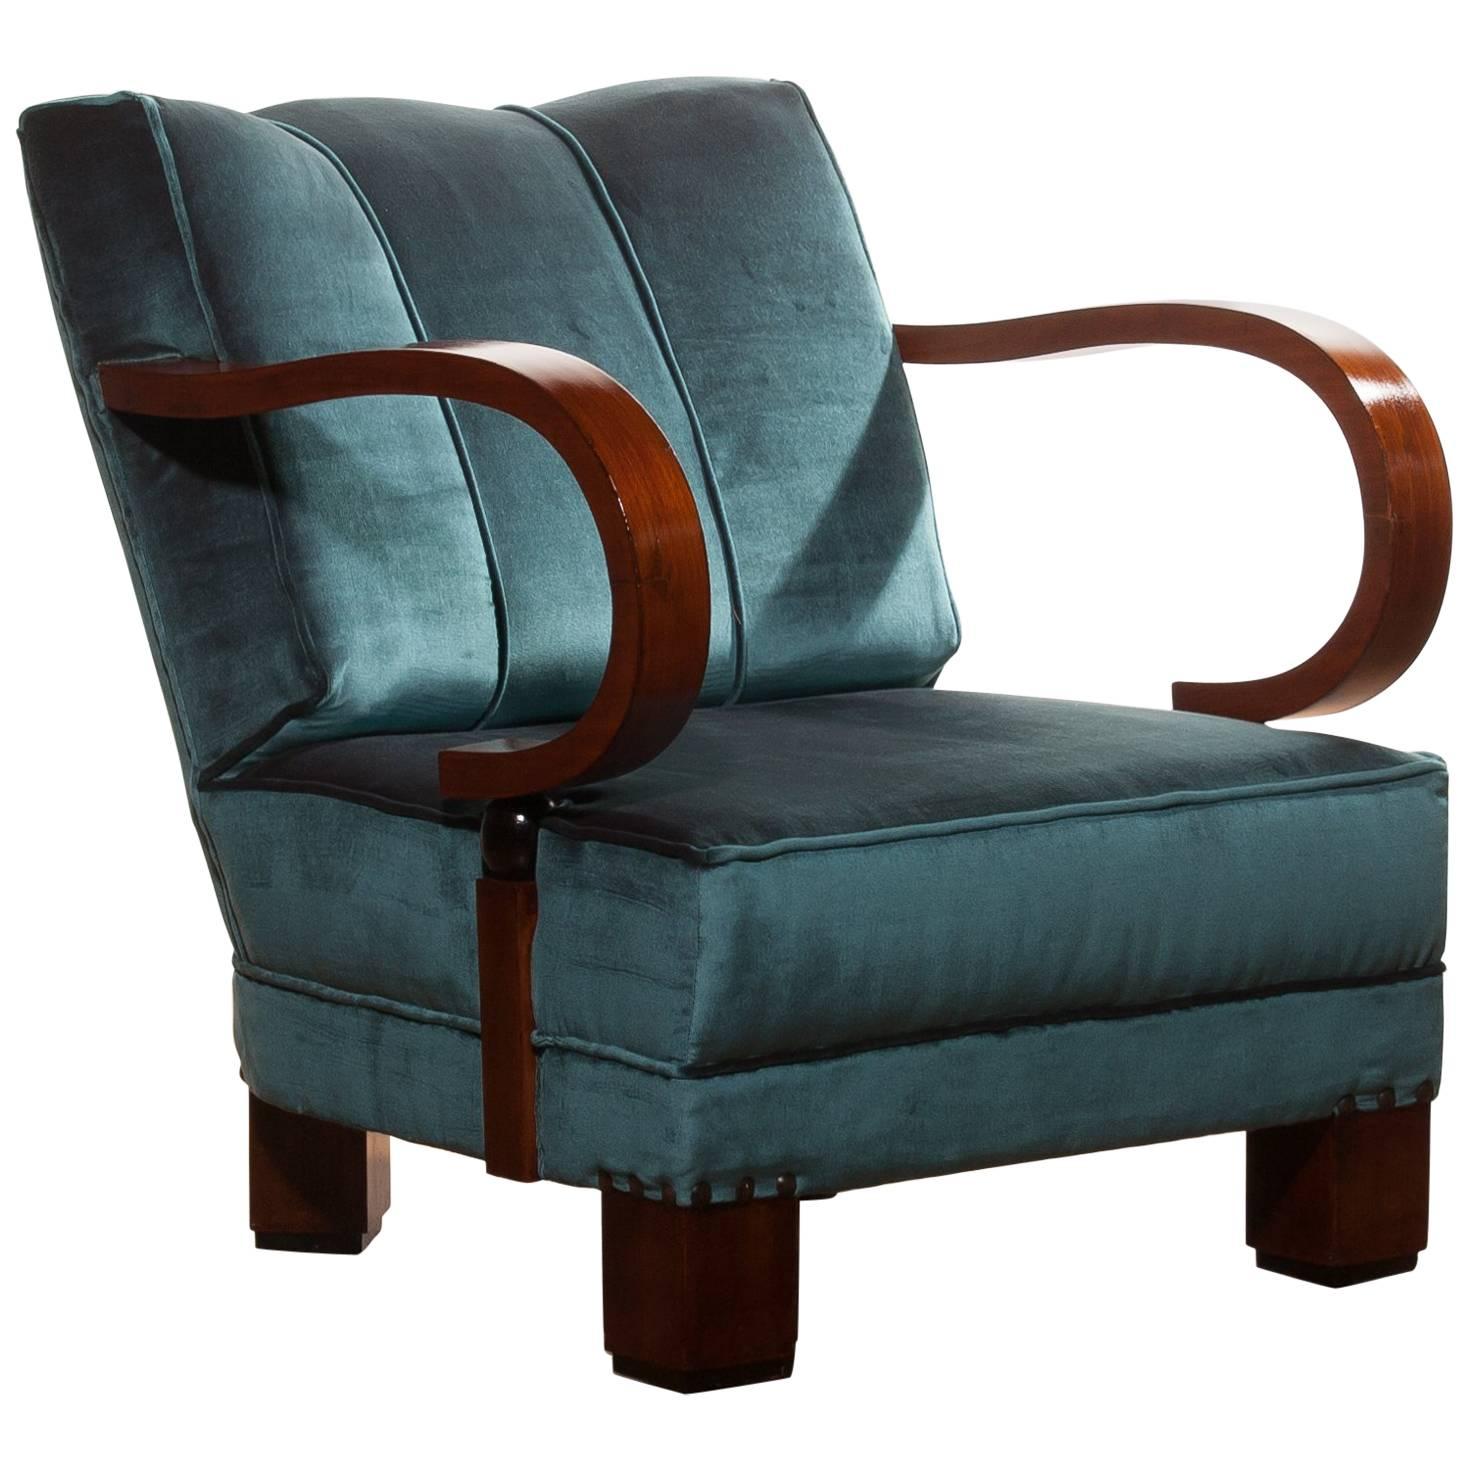 1920s, Art Deco Blue Velvet Club Chair